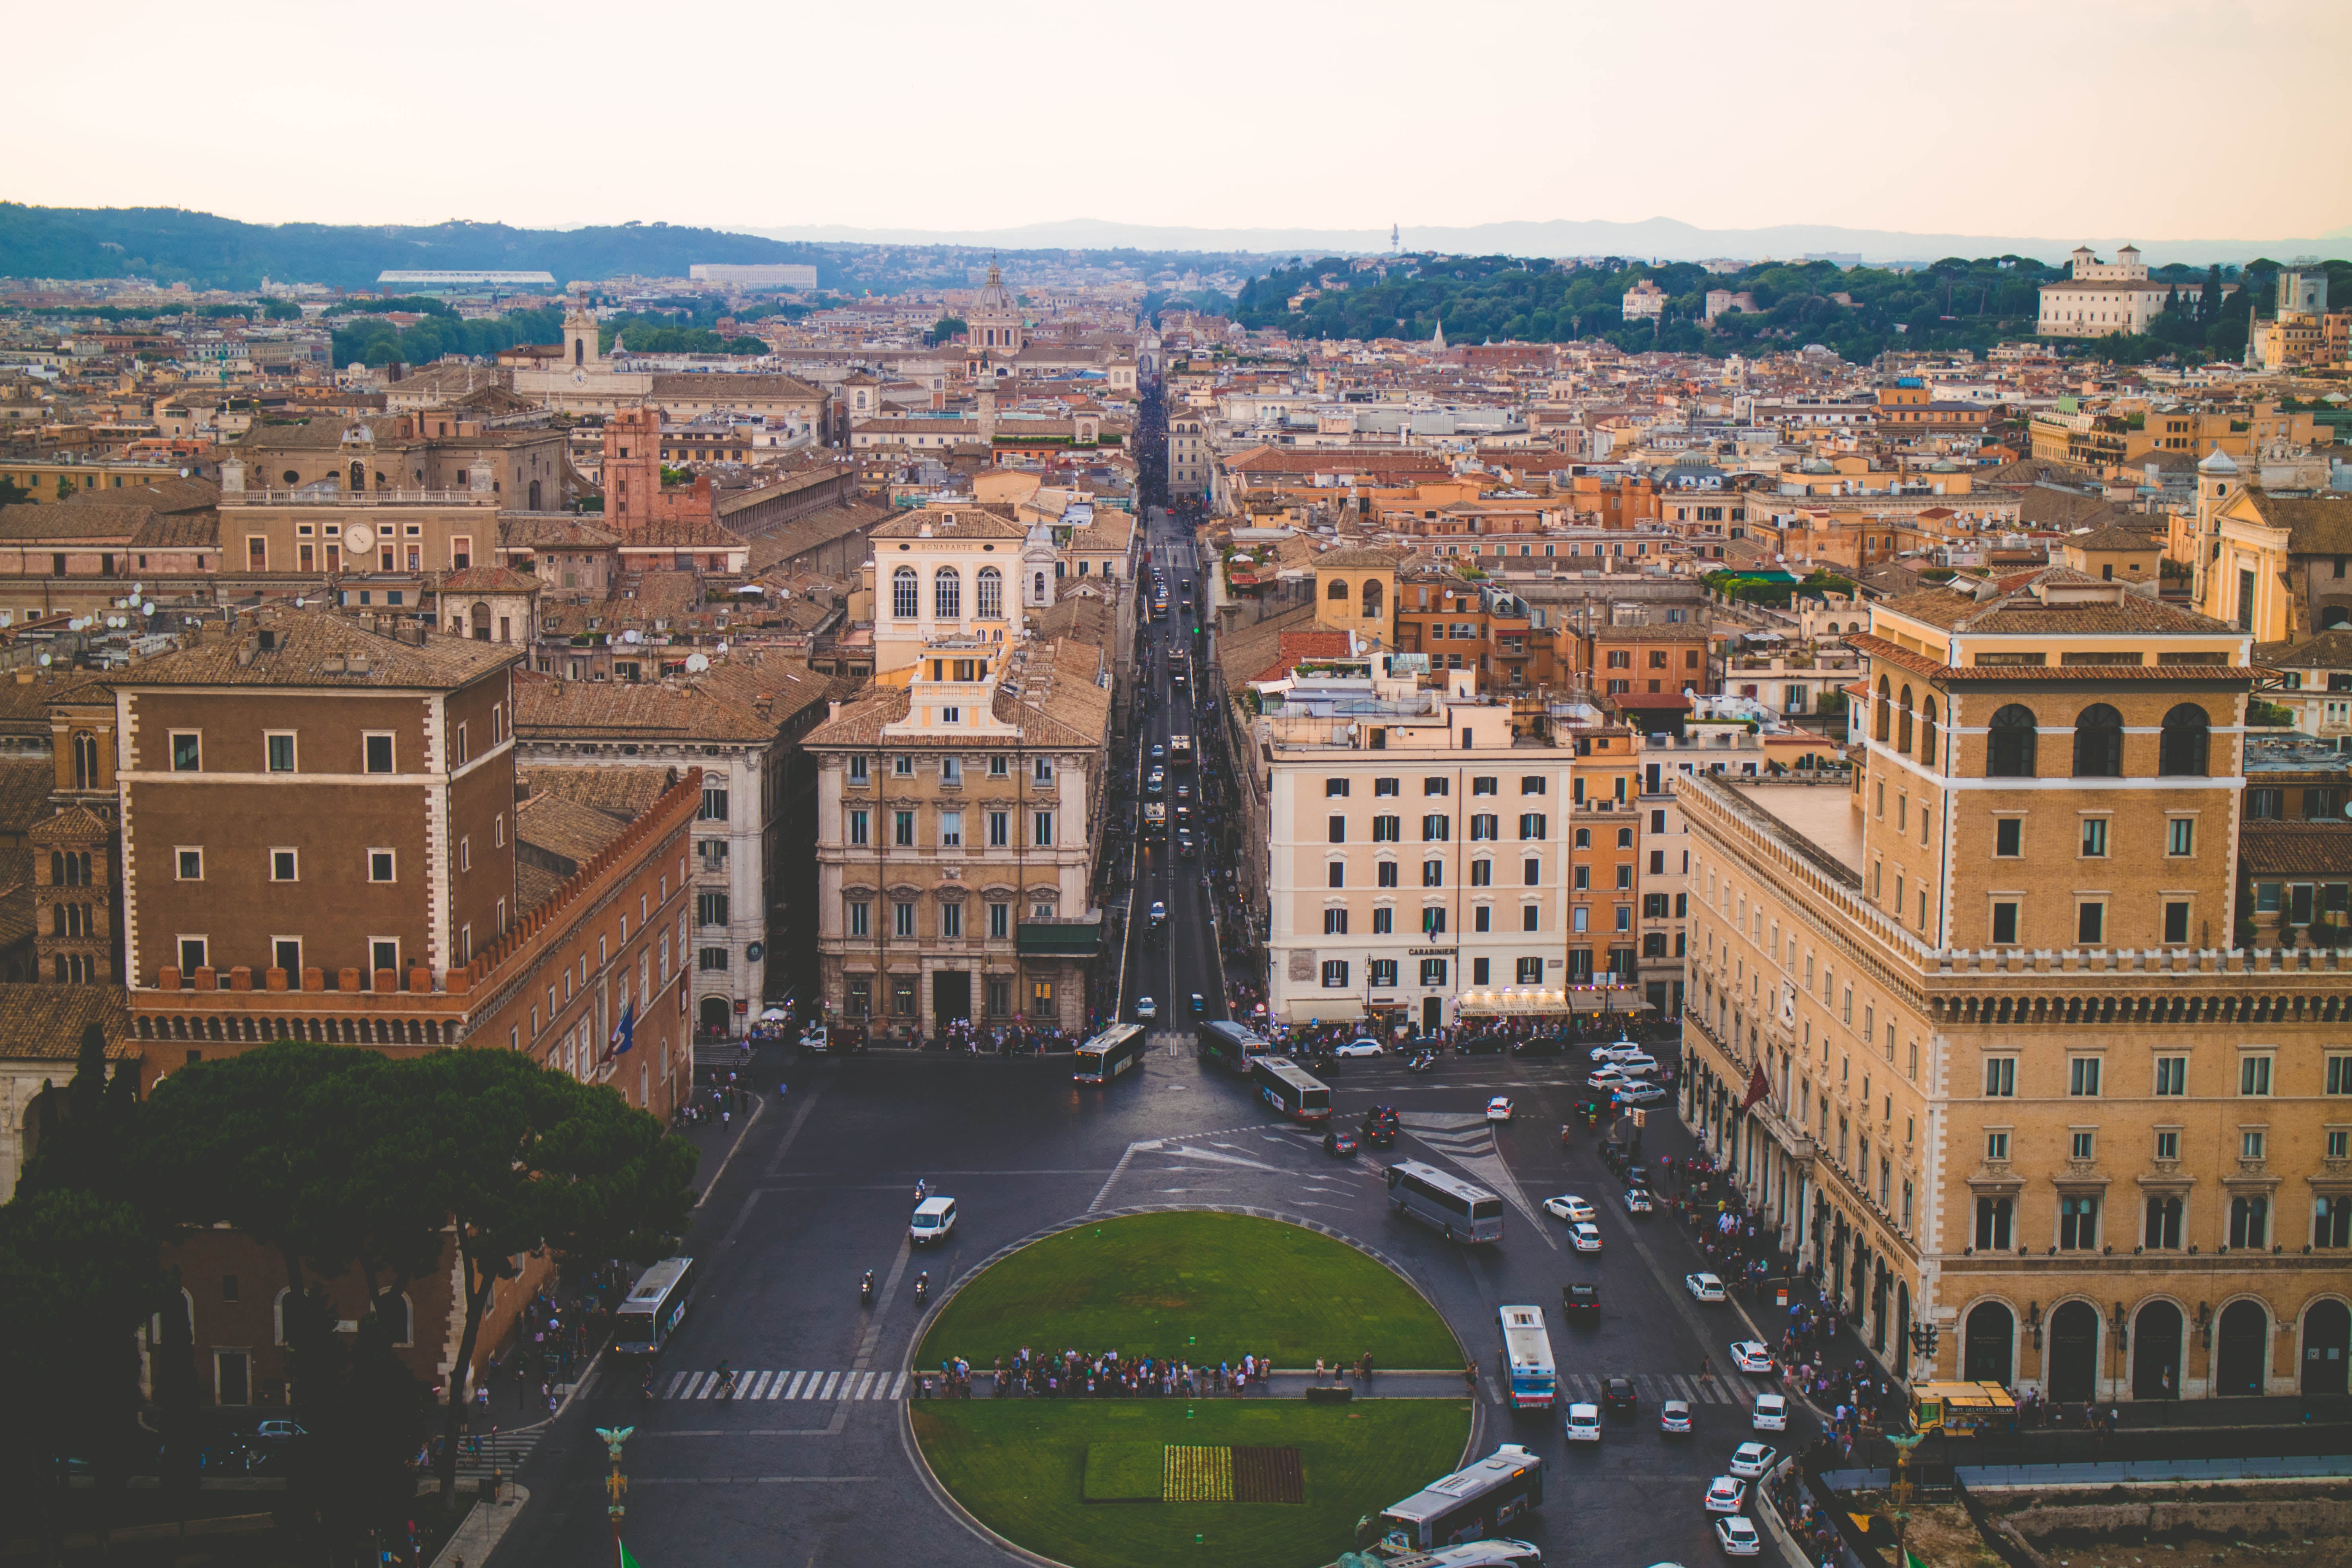 A birds-eye view picture of the altare della patria square in Rome, Italy